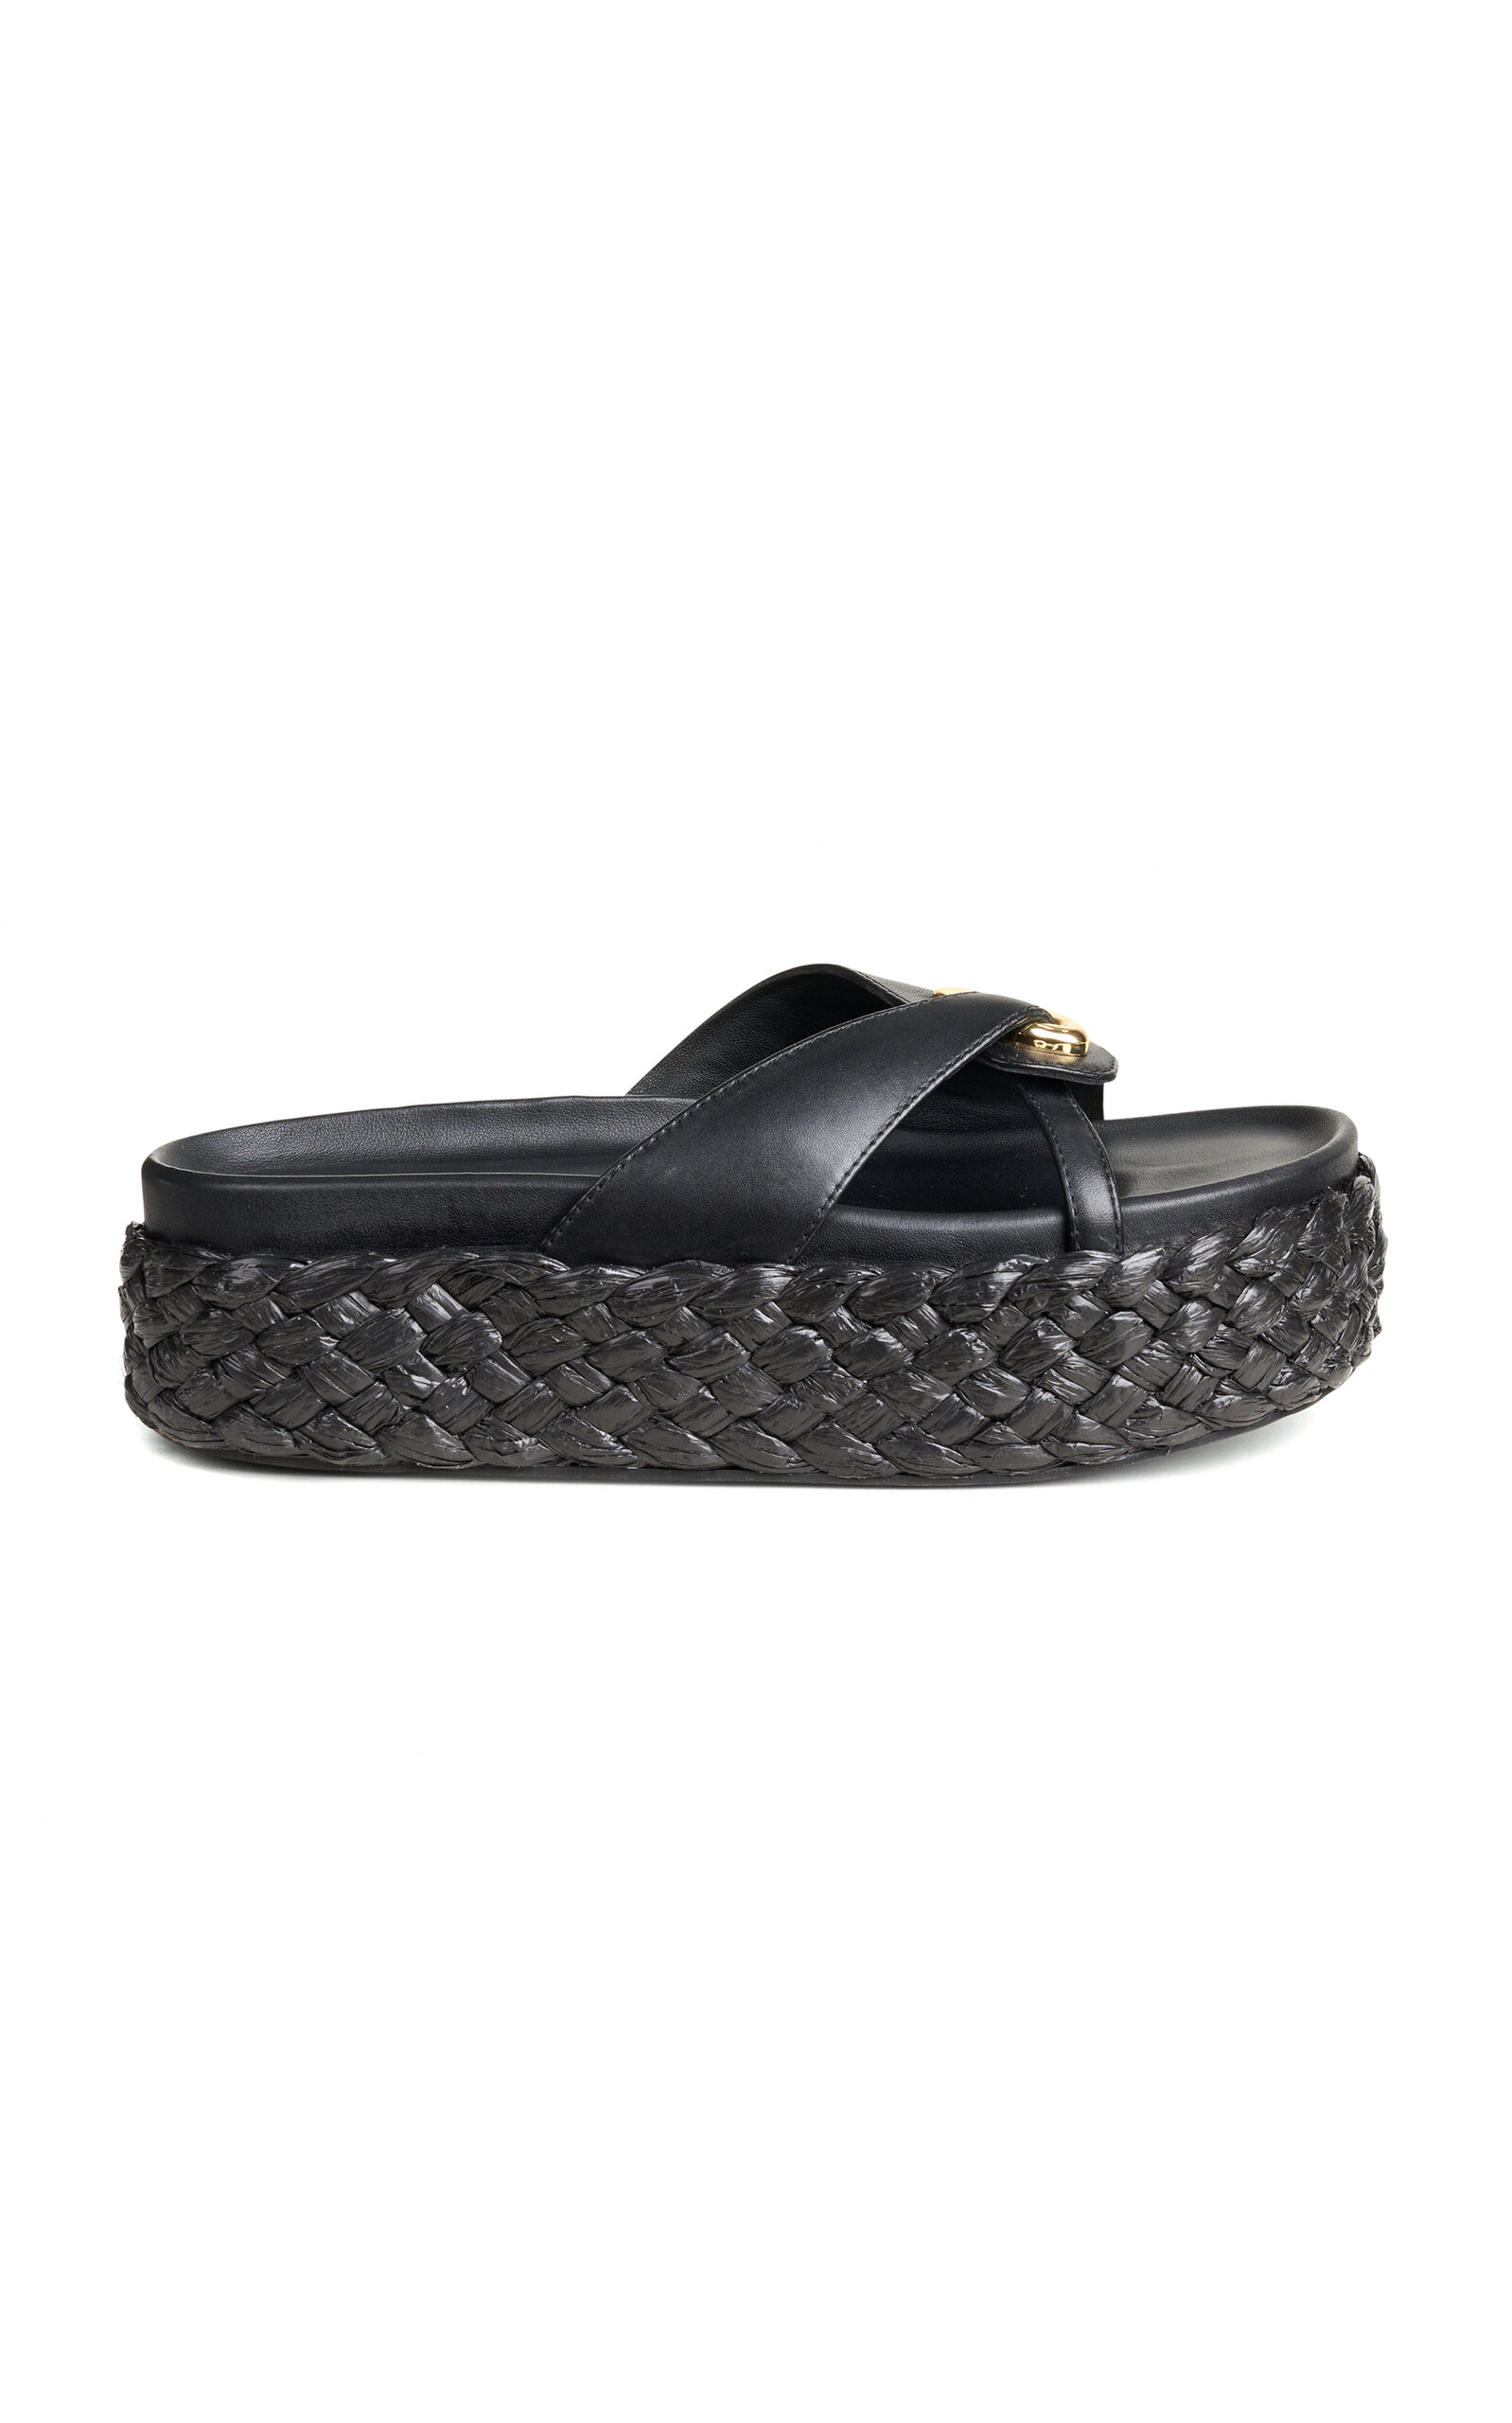 Blythe Leather Platform Sandals